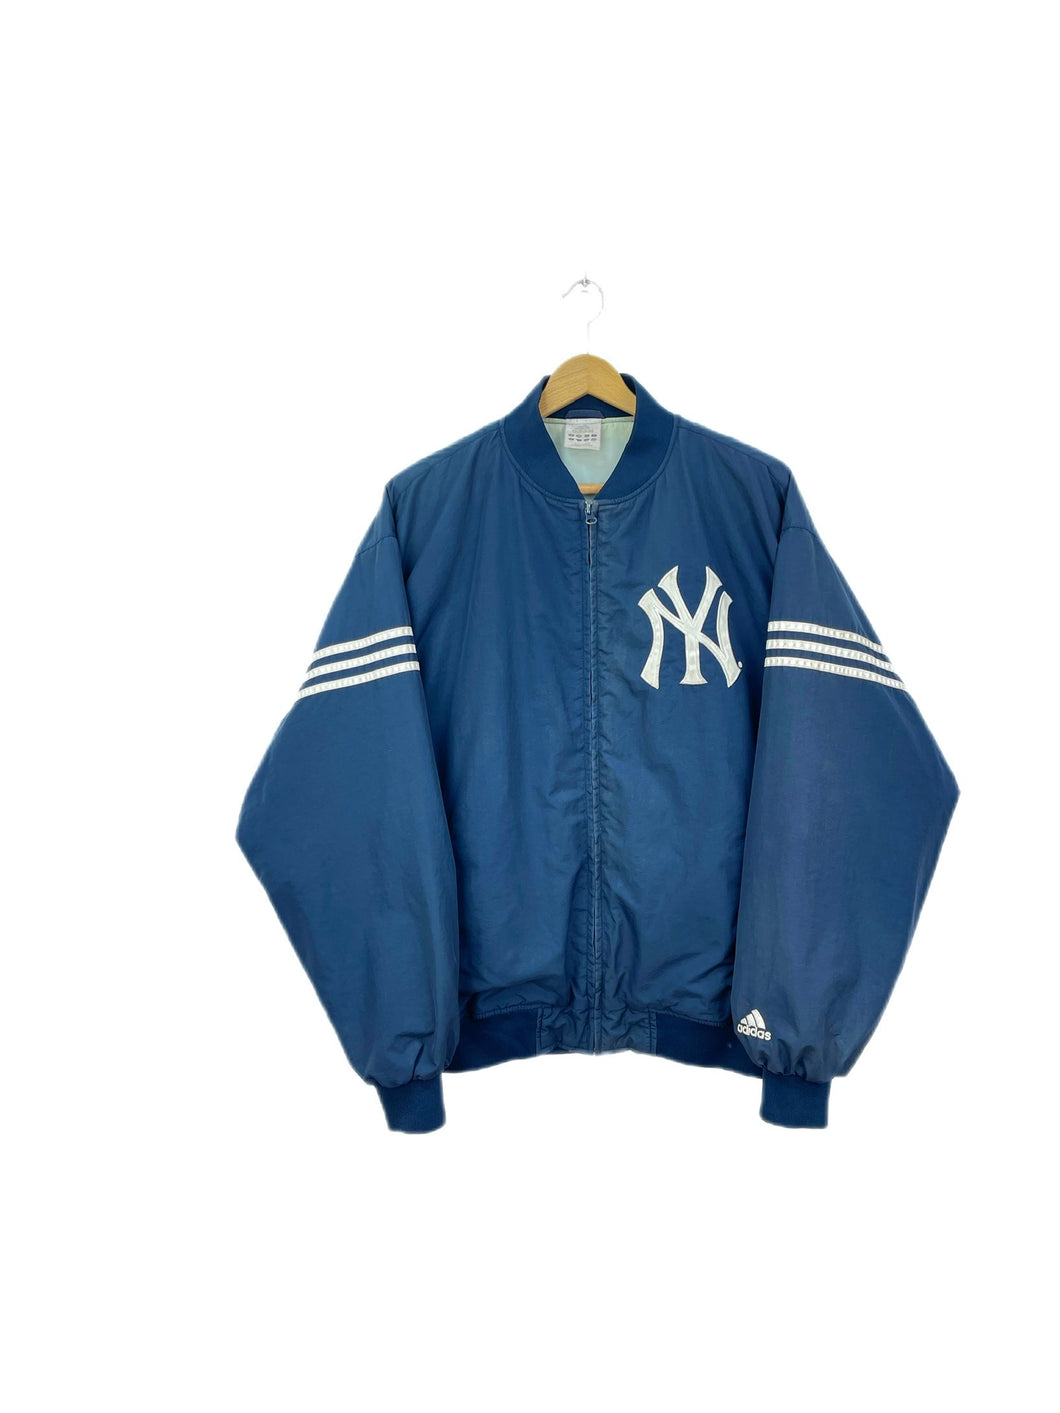 Adidas New York Yankees MLB Bomber Jacket - Large